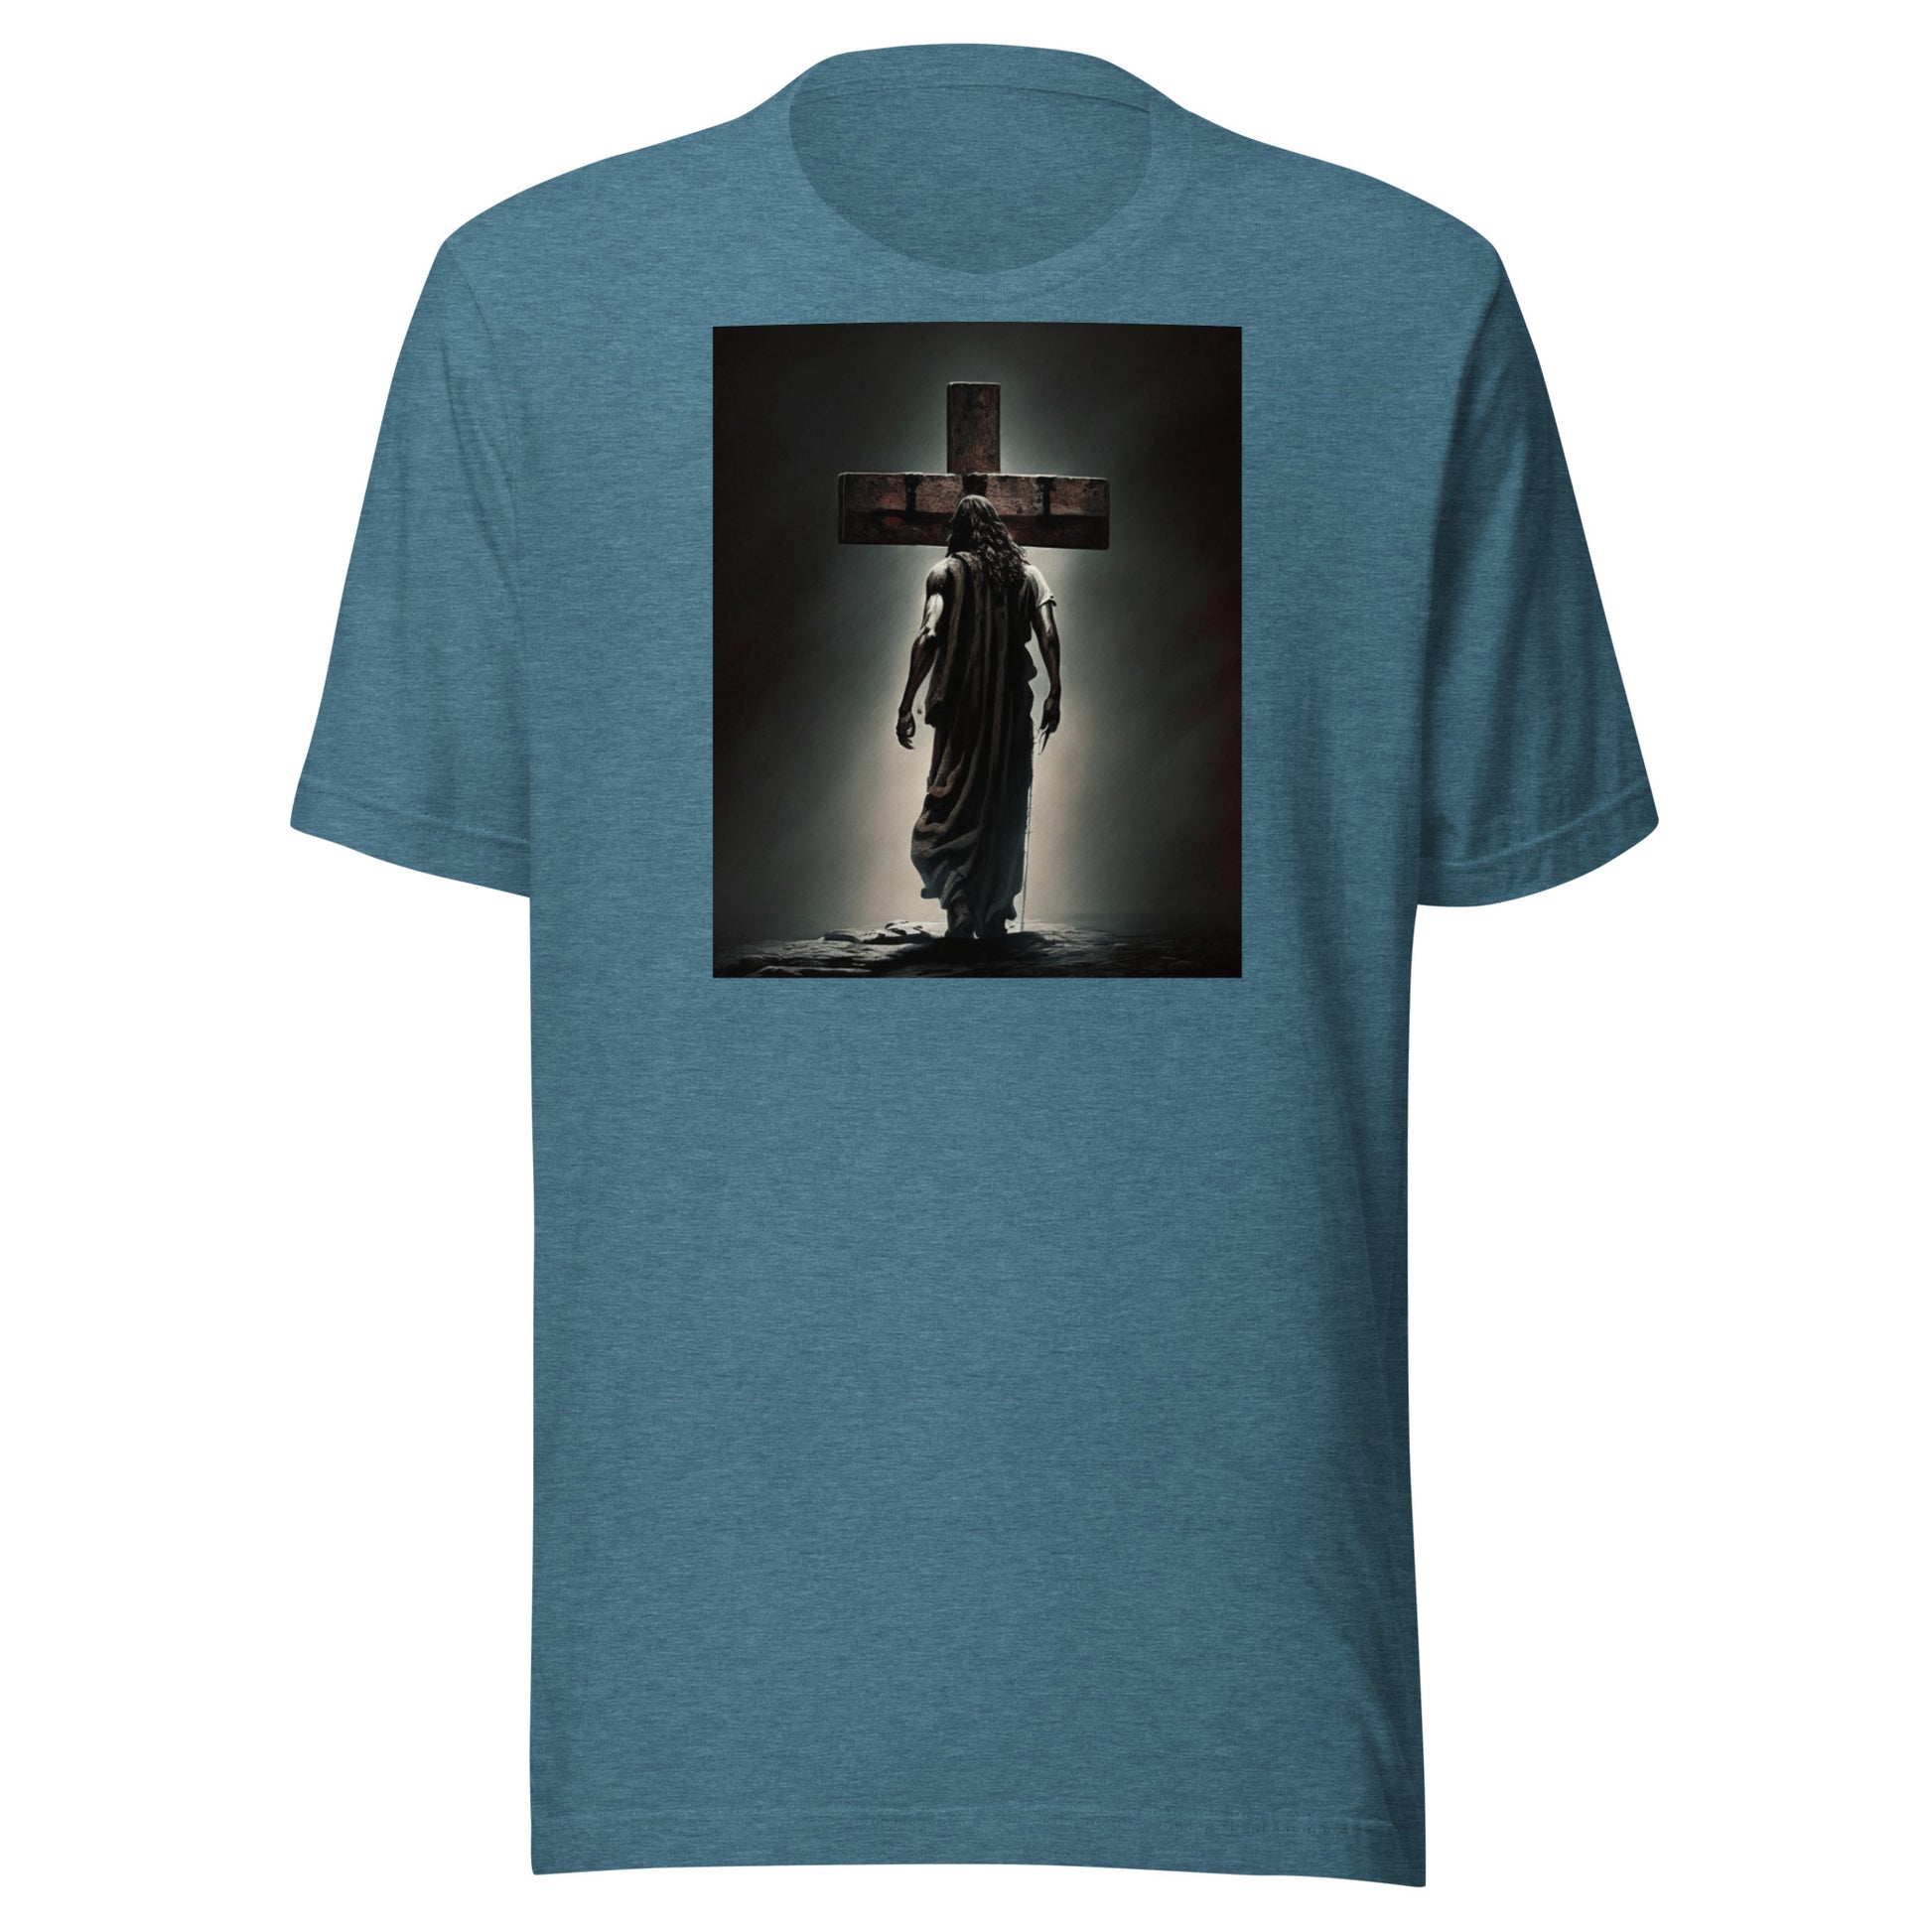 Christ Facing the Cross Women's Christian Classic T-Shirt Heather Deep Teal